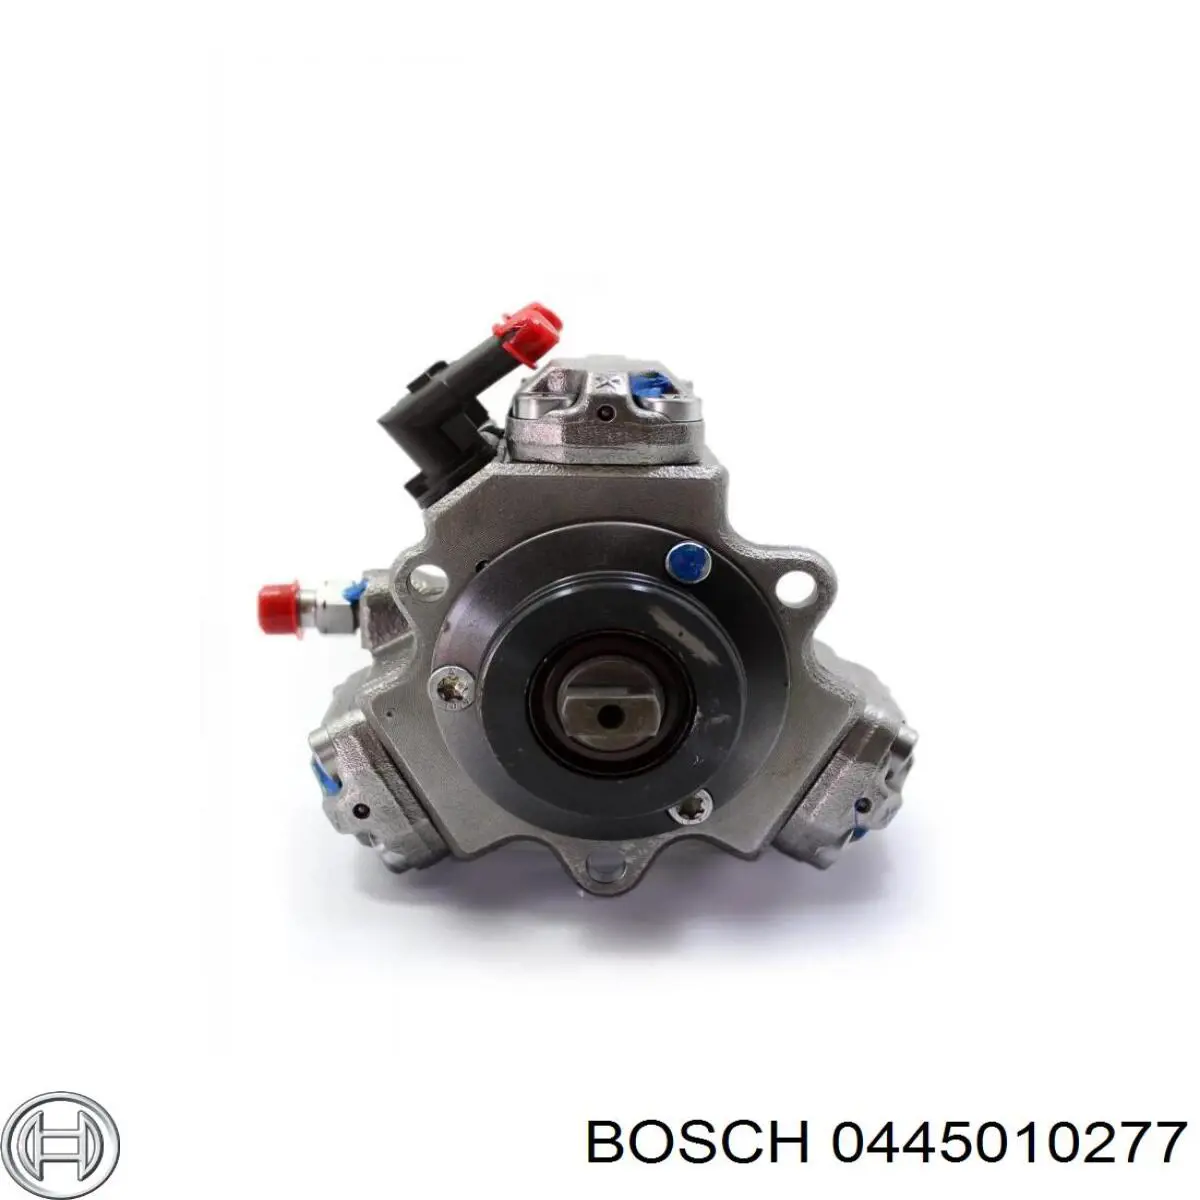 Bomba de alta presión 0445010277 Bosch